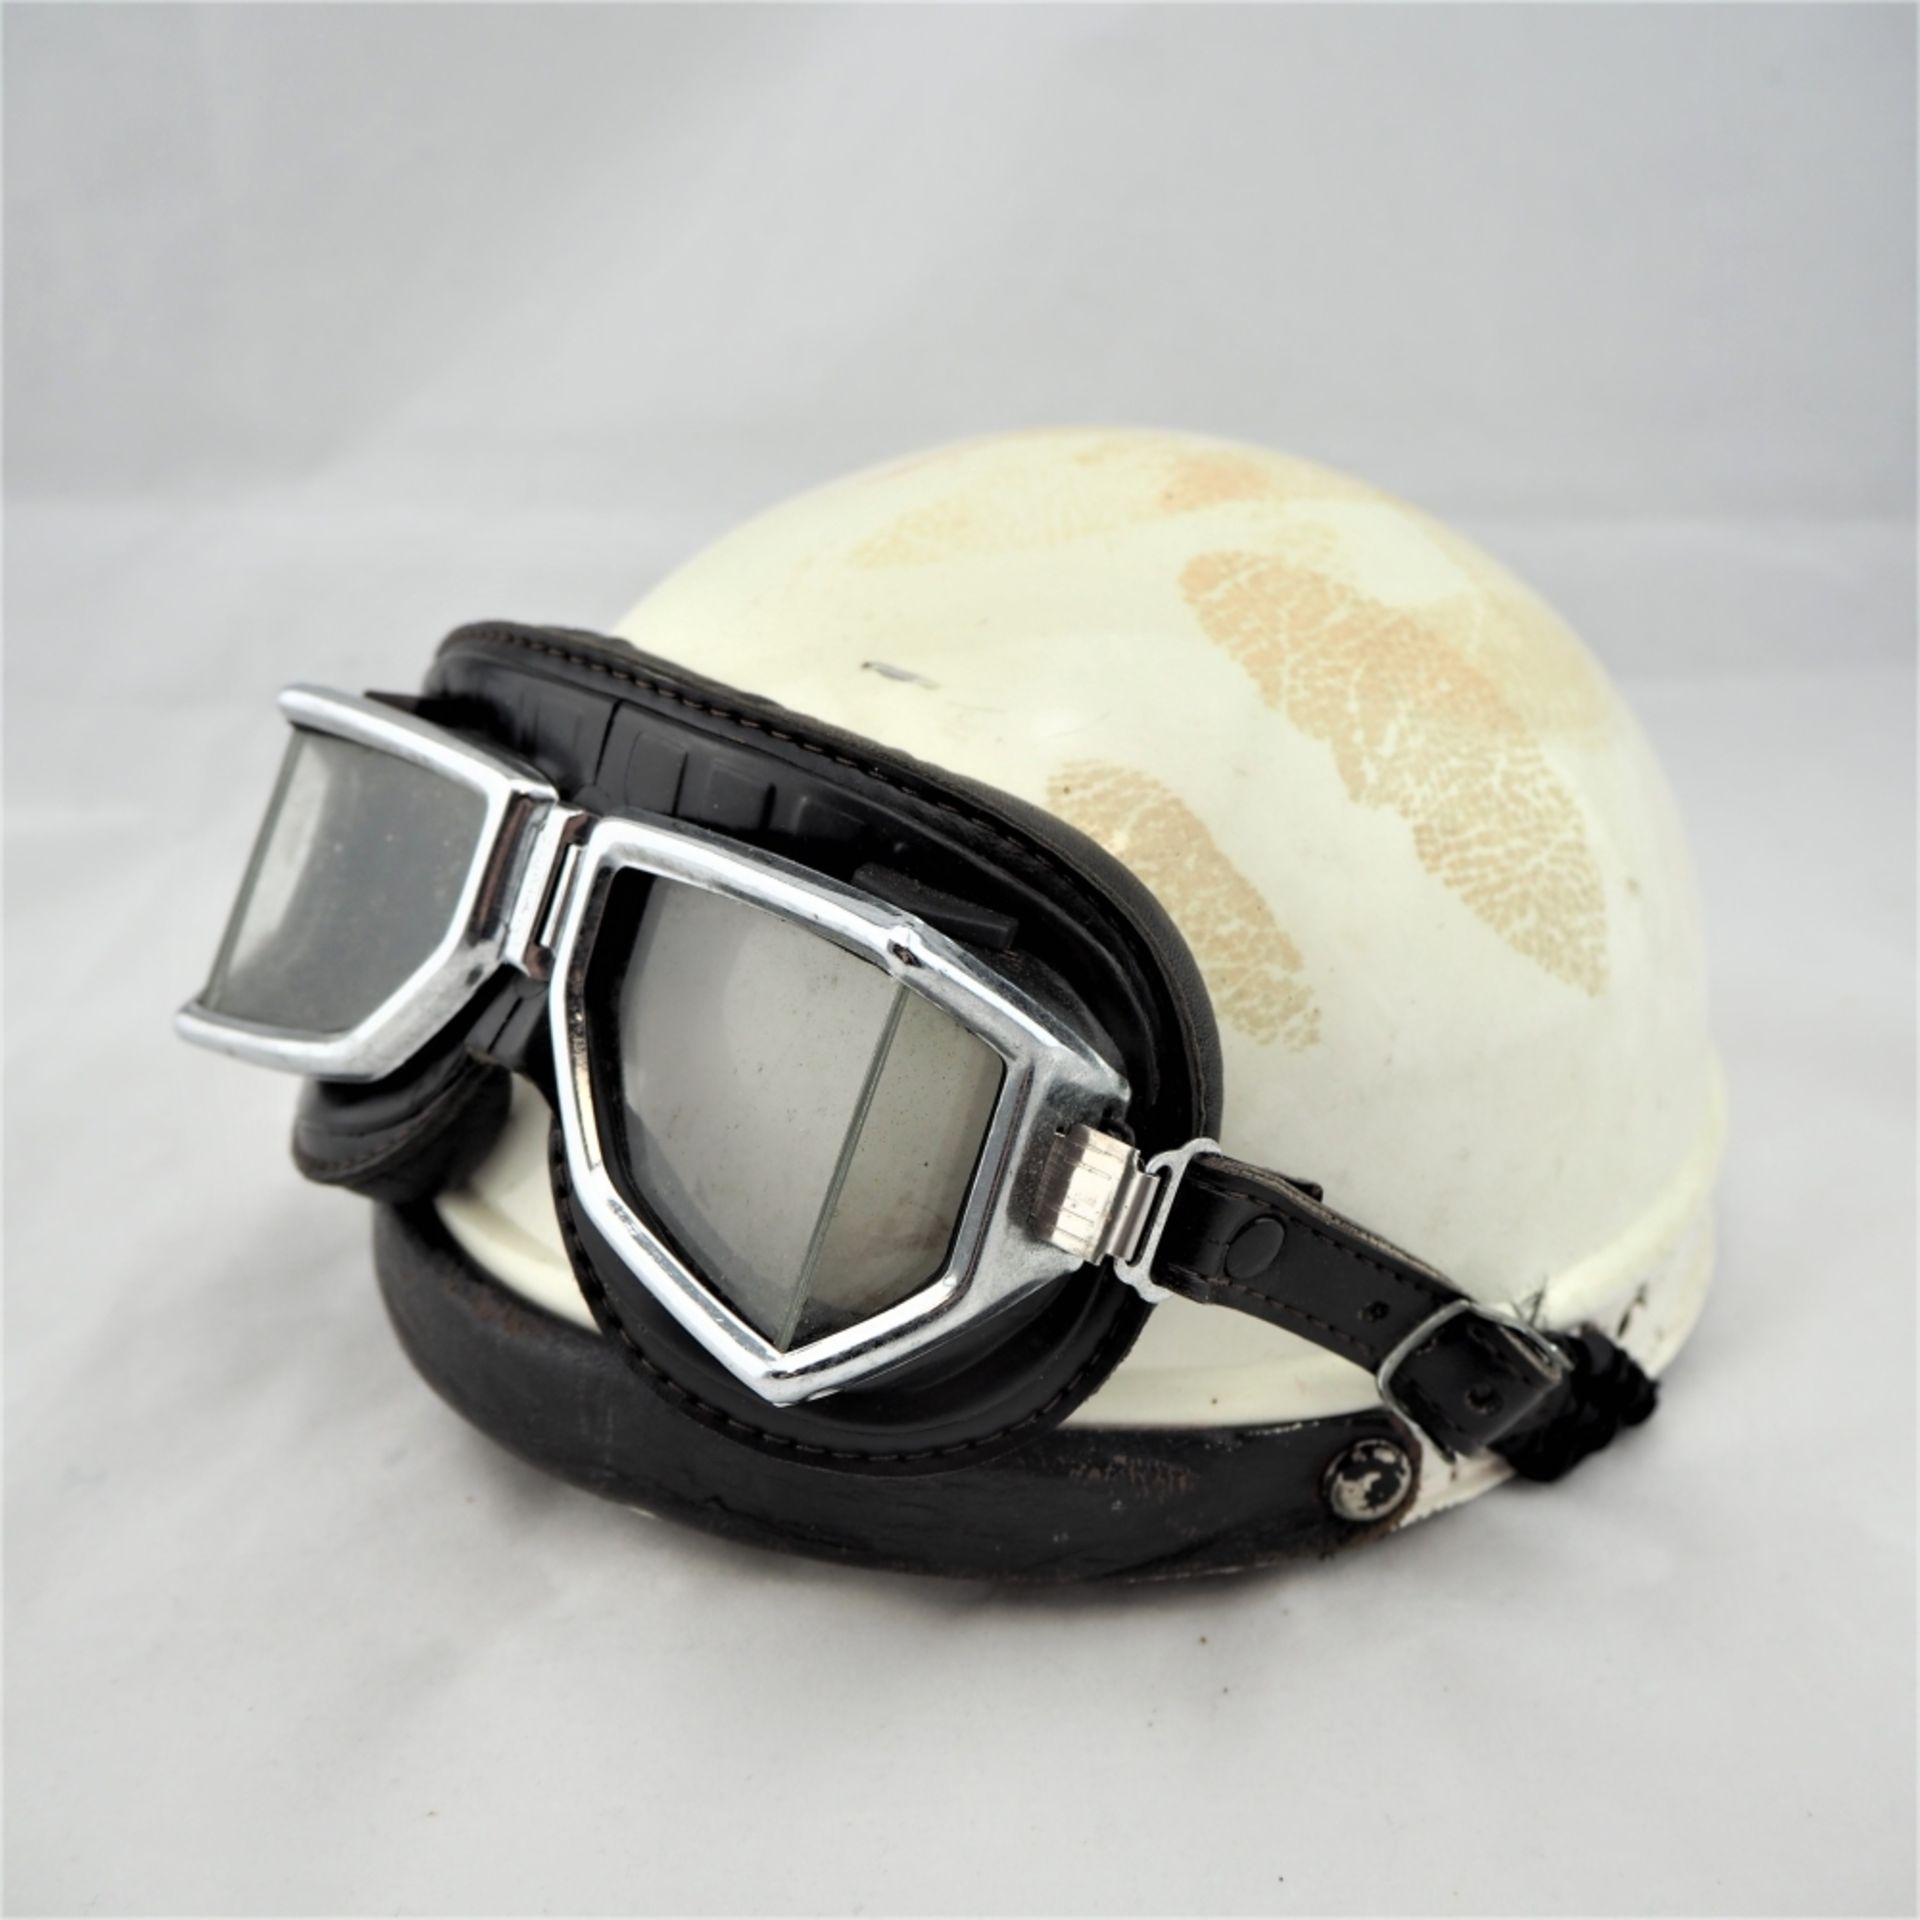 Motorrad-Helm, wohl 50er Jahre,Blech und Leder, mit Original-Brille. Gebraucht mit Spure